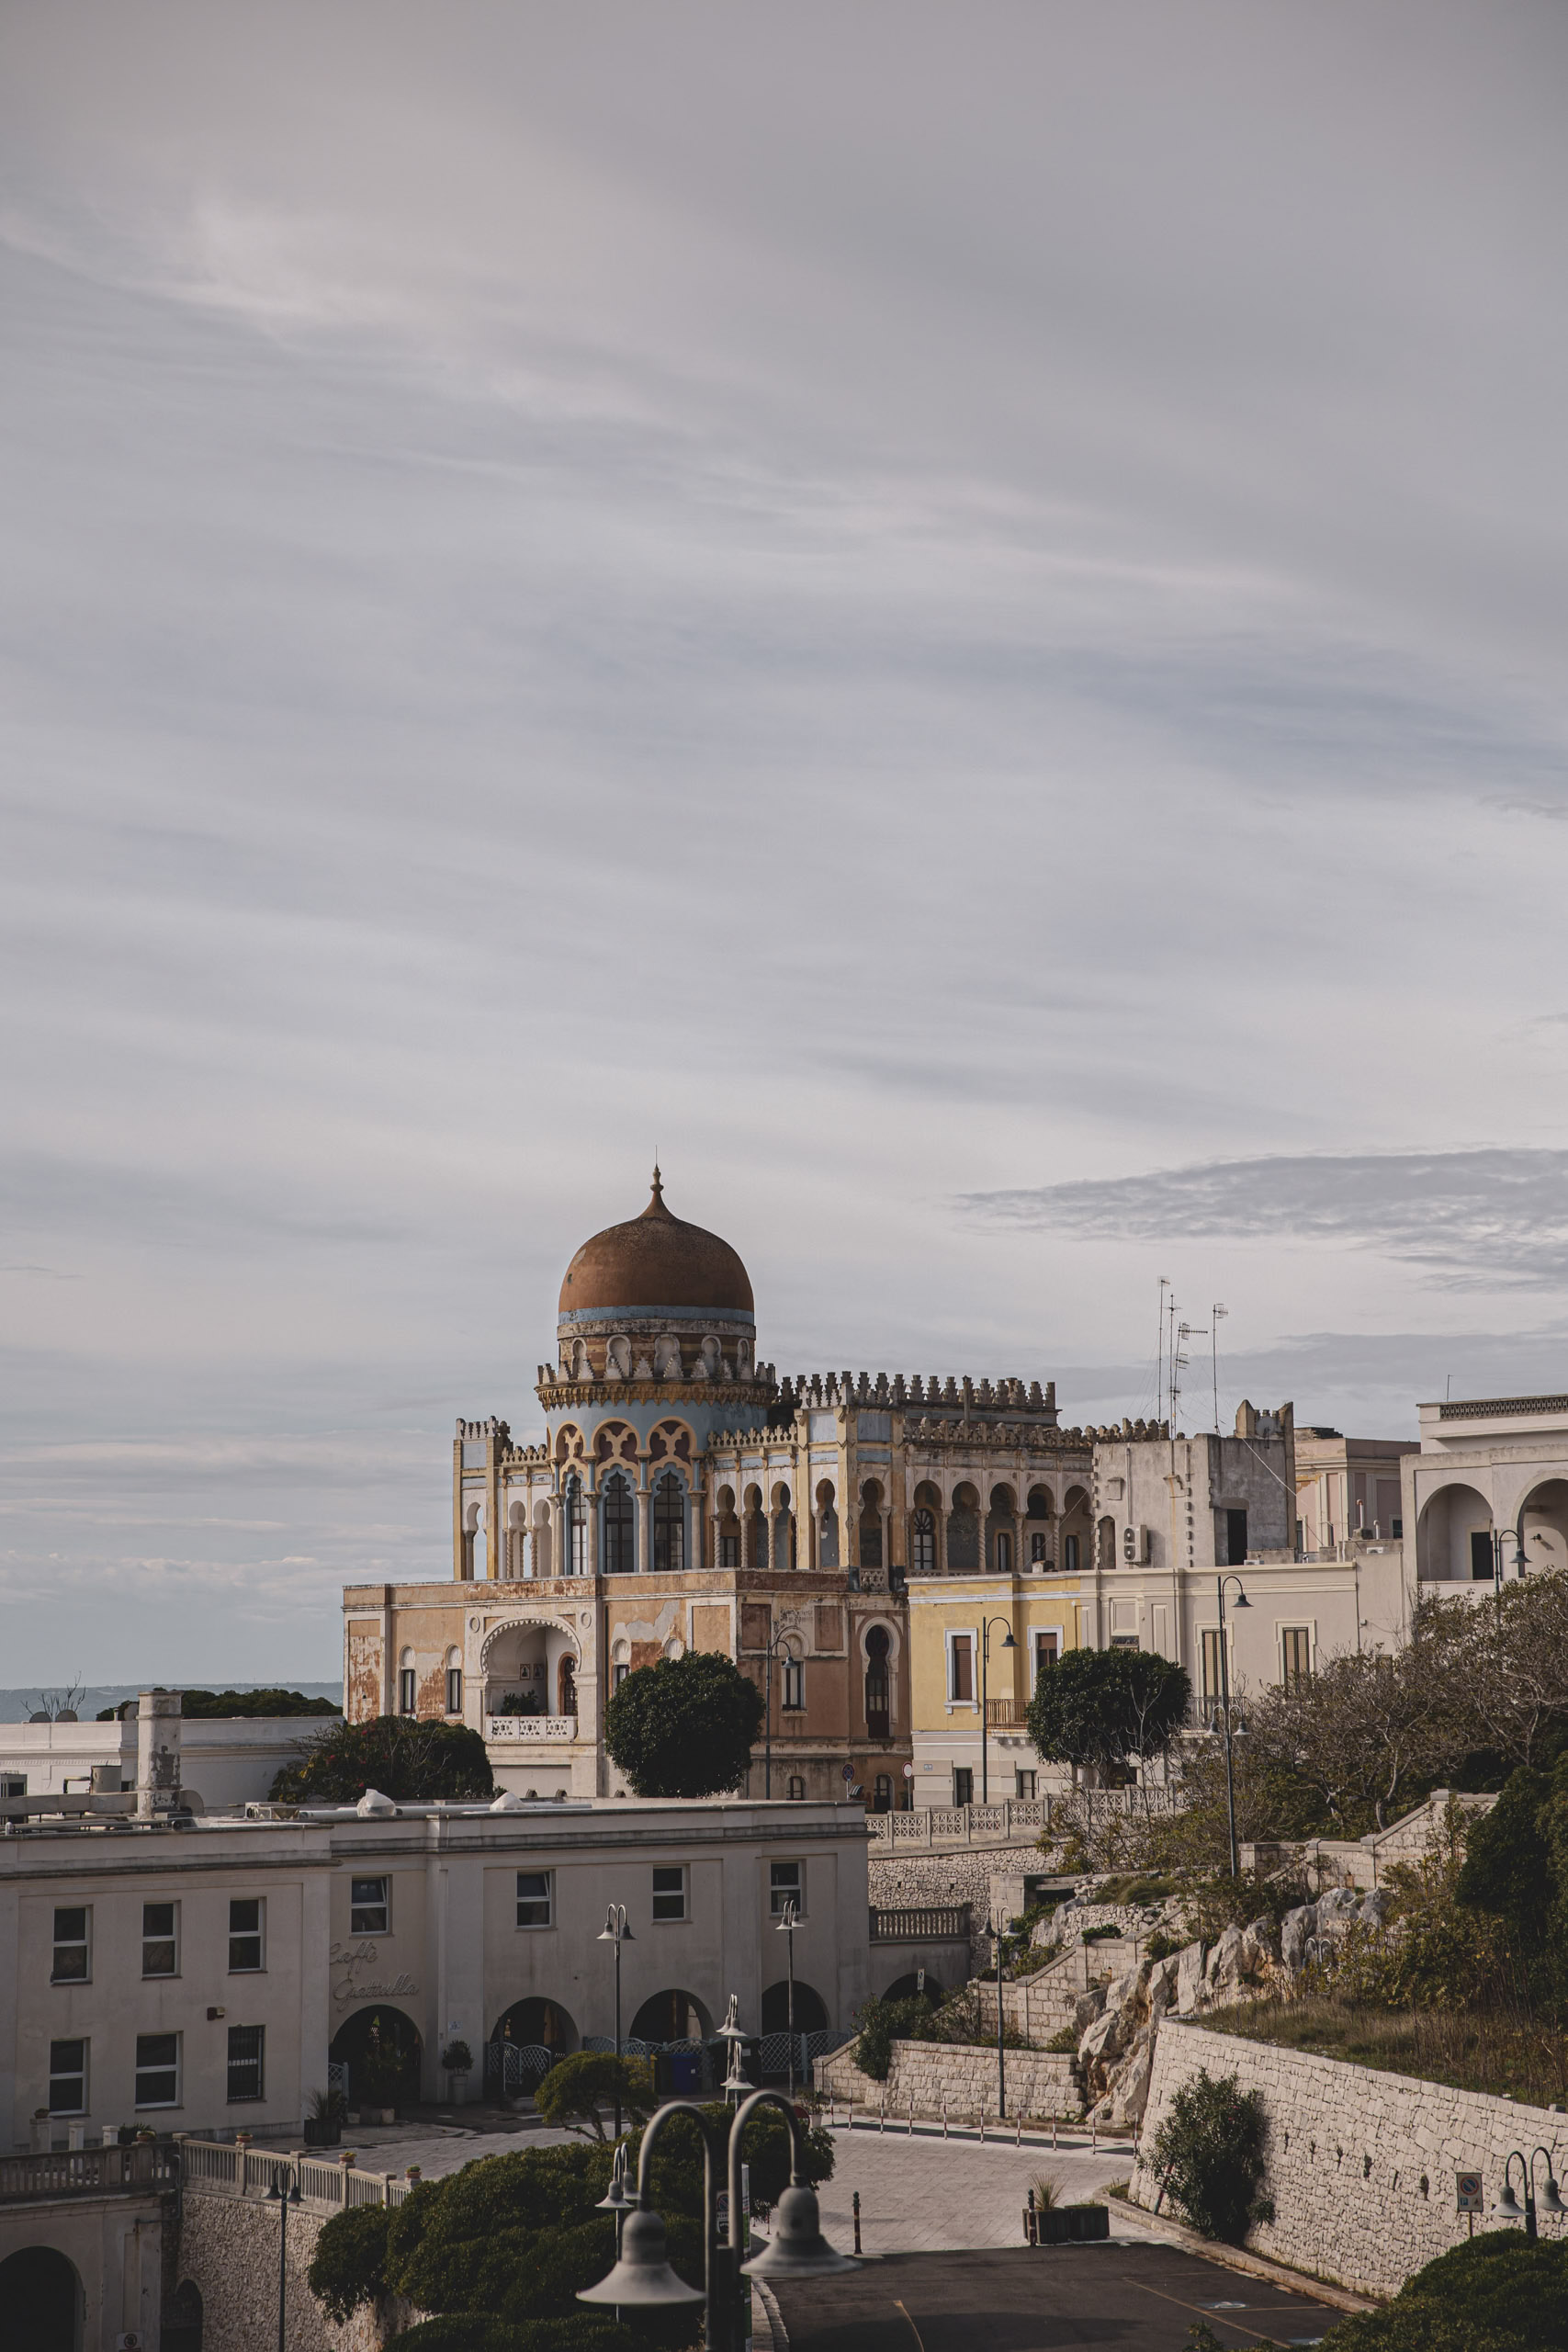 Elegantes historisches Gebäude mit Kuppeldach und kunstvoller Architektur, thronend auf einer felsigen Landschaft, mit Blick auf einen wolkigen Himmel und einem Blick auf das Meer im Hintergrund. © Fotografie Tomas Rodriguez